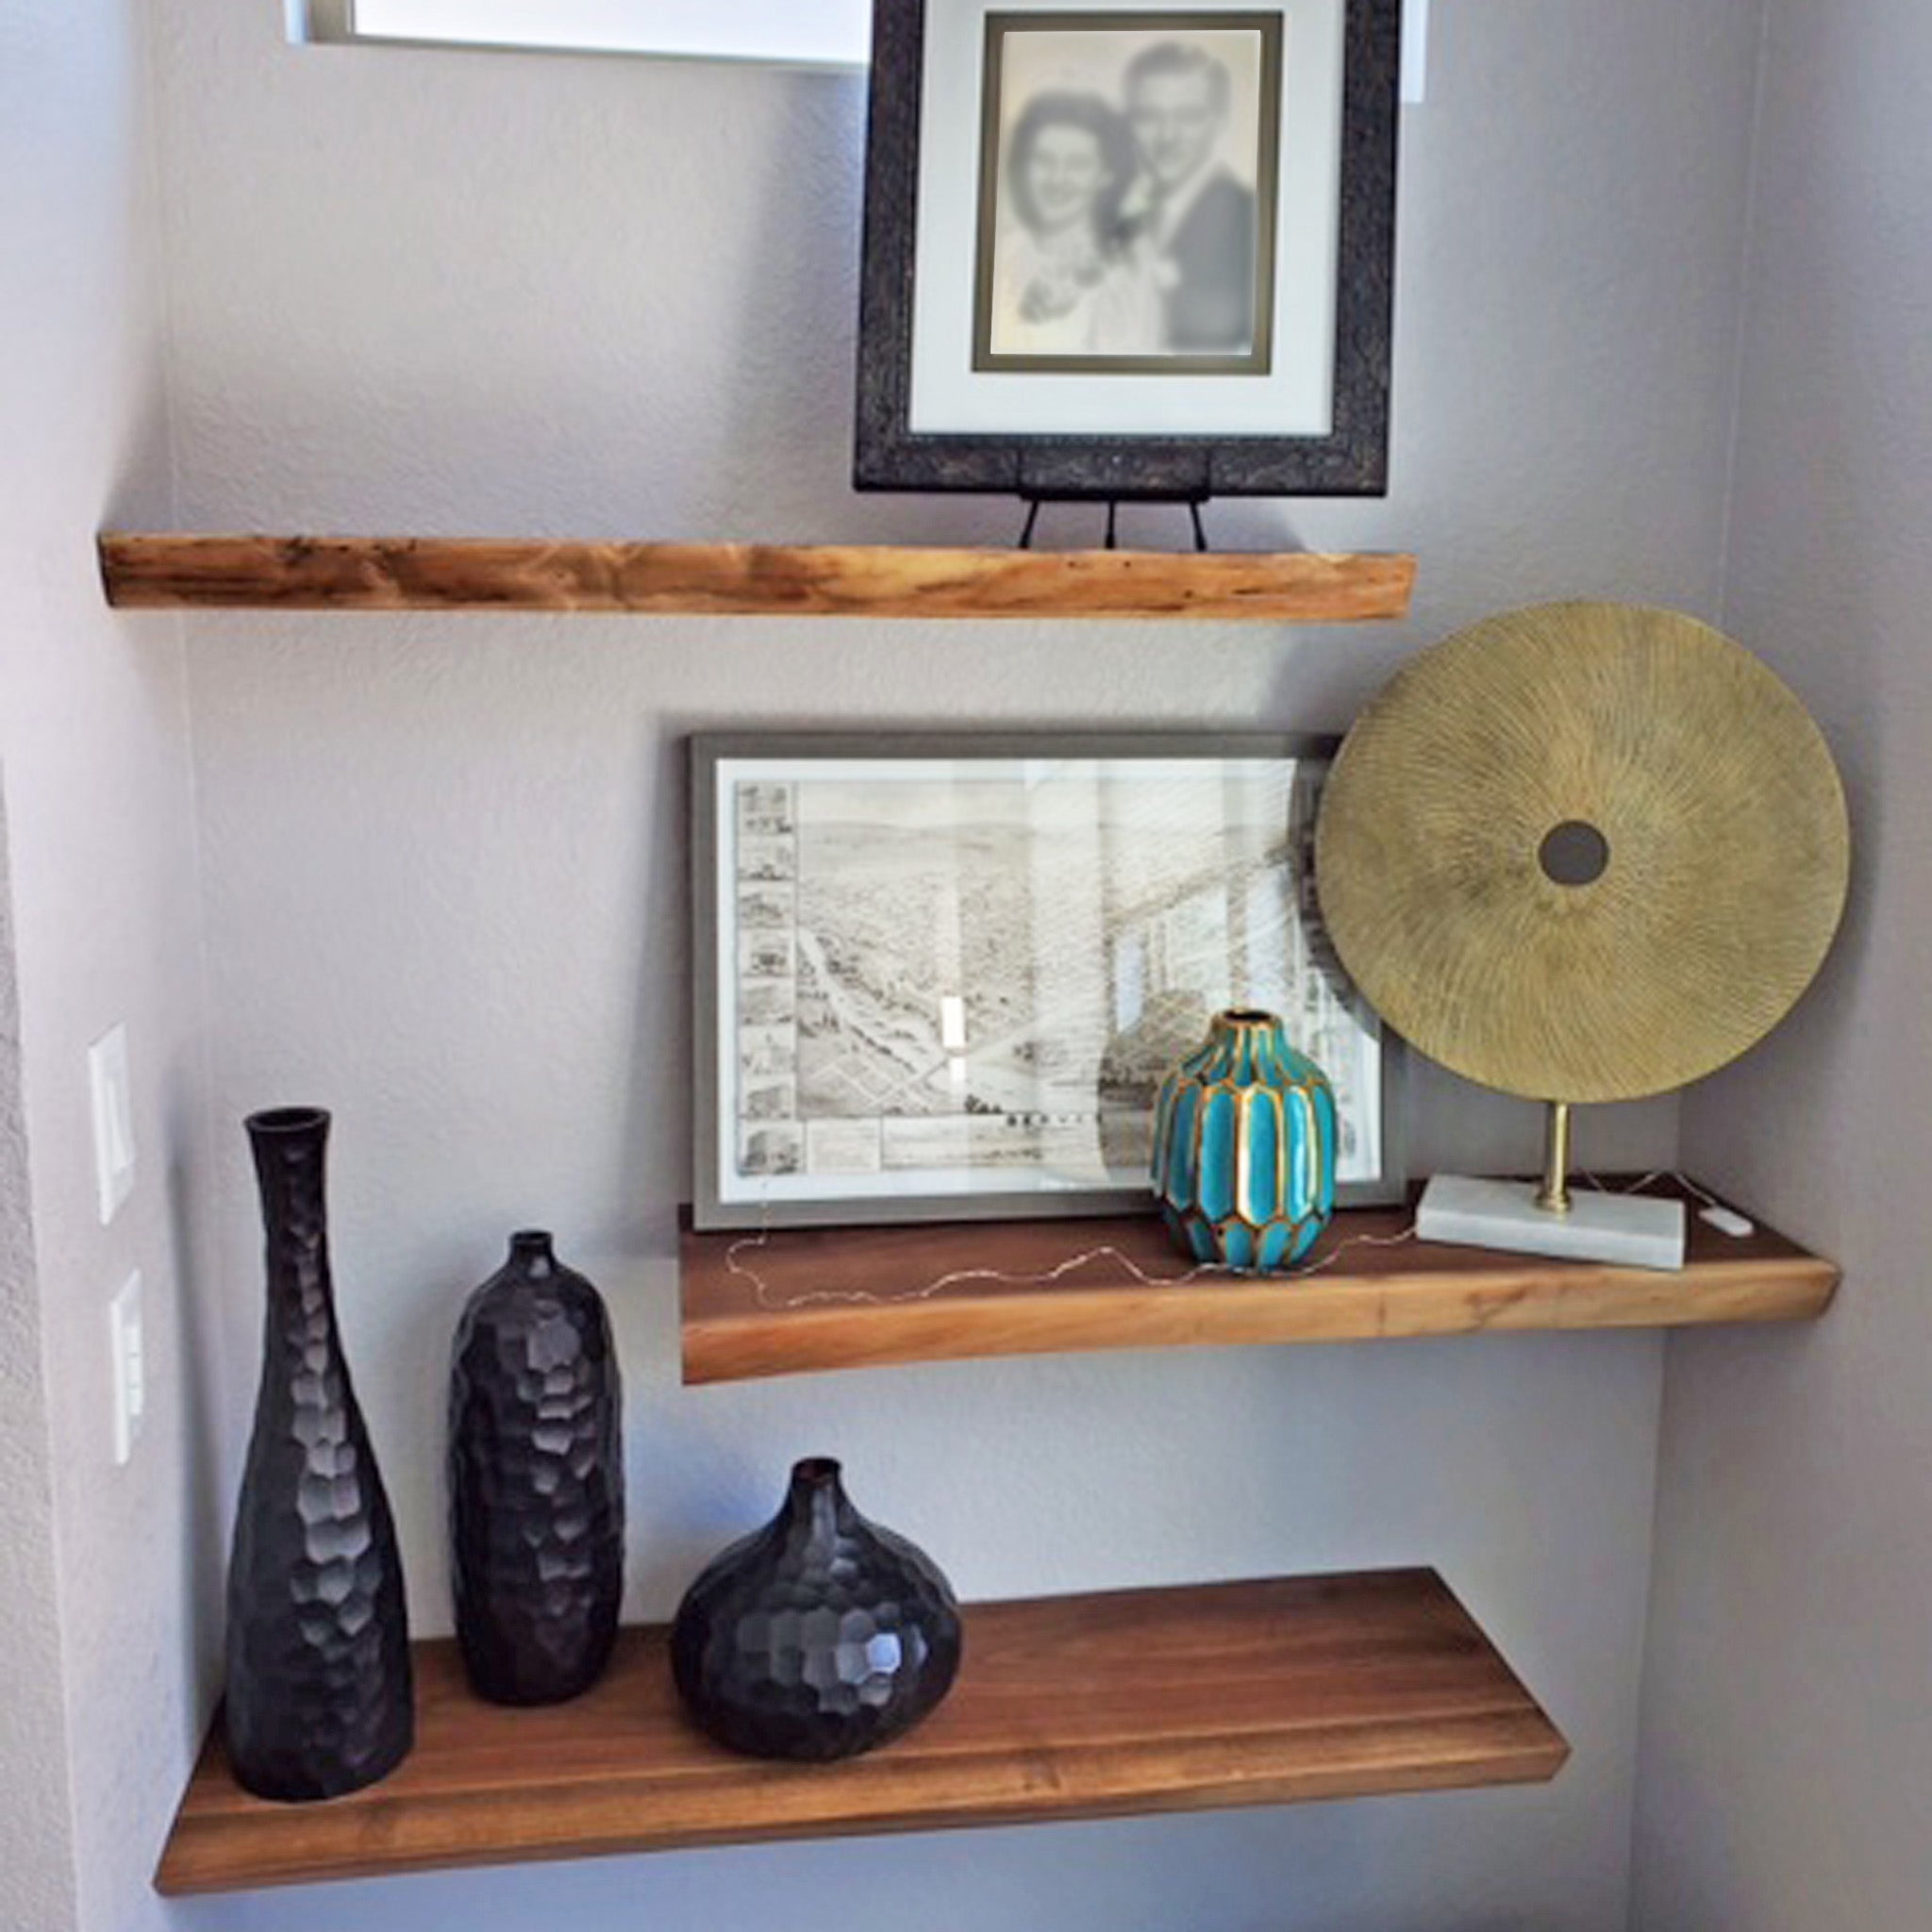 Walnut Floating Shelves, Kitchen Shelf 